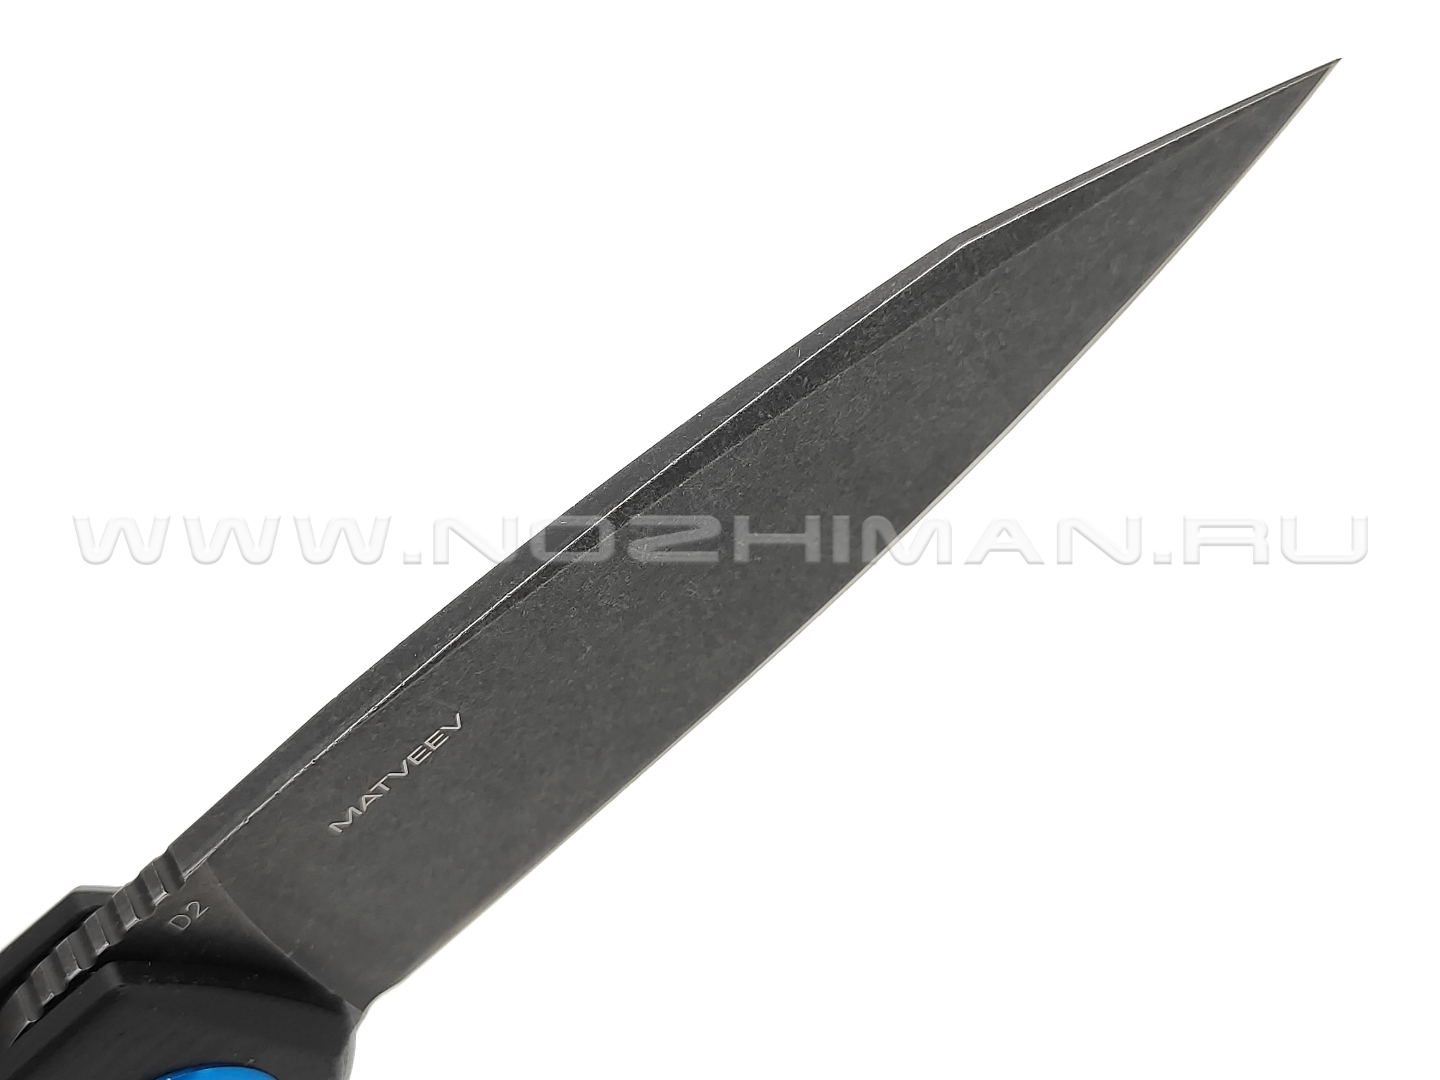 Нож Black Fox Argus BF-760 сталь D2 blackwash, рукоять G10 black